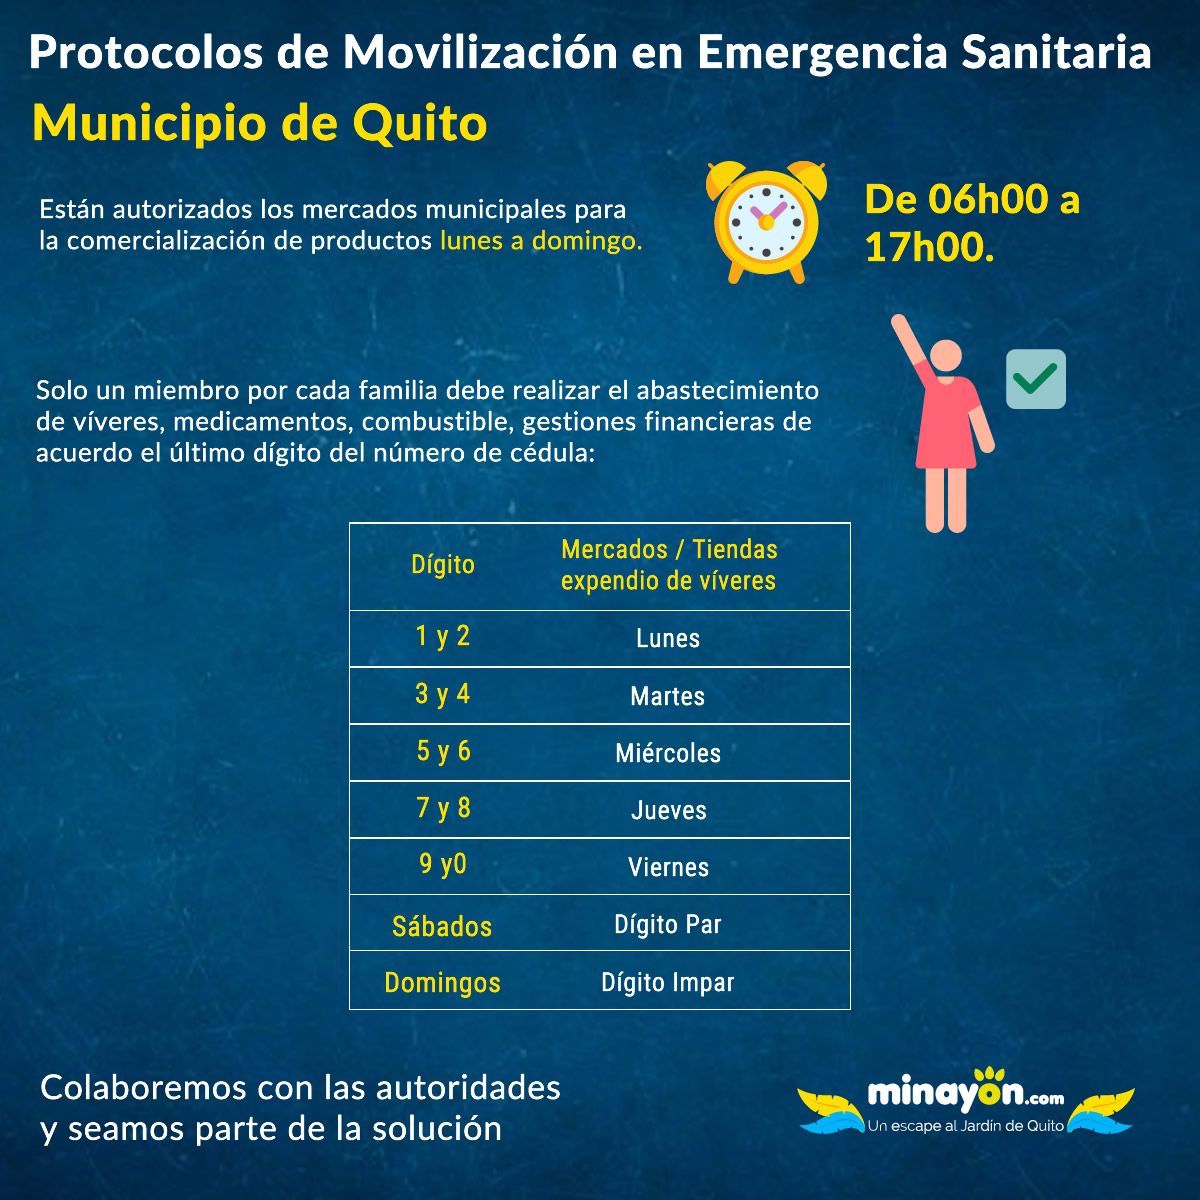 Protocolos de Movilización en Emergencia Sanitaria - Municipio de Quito